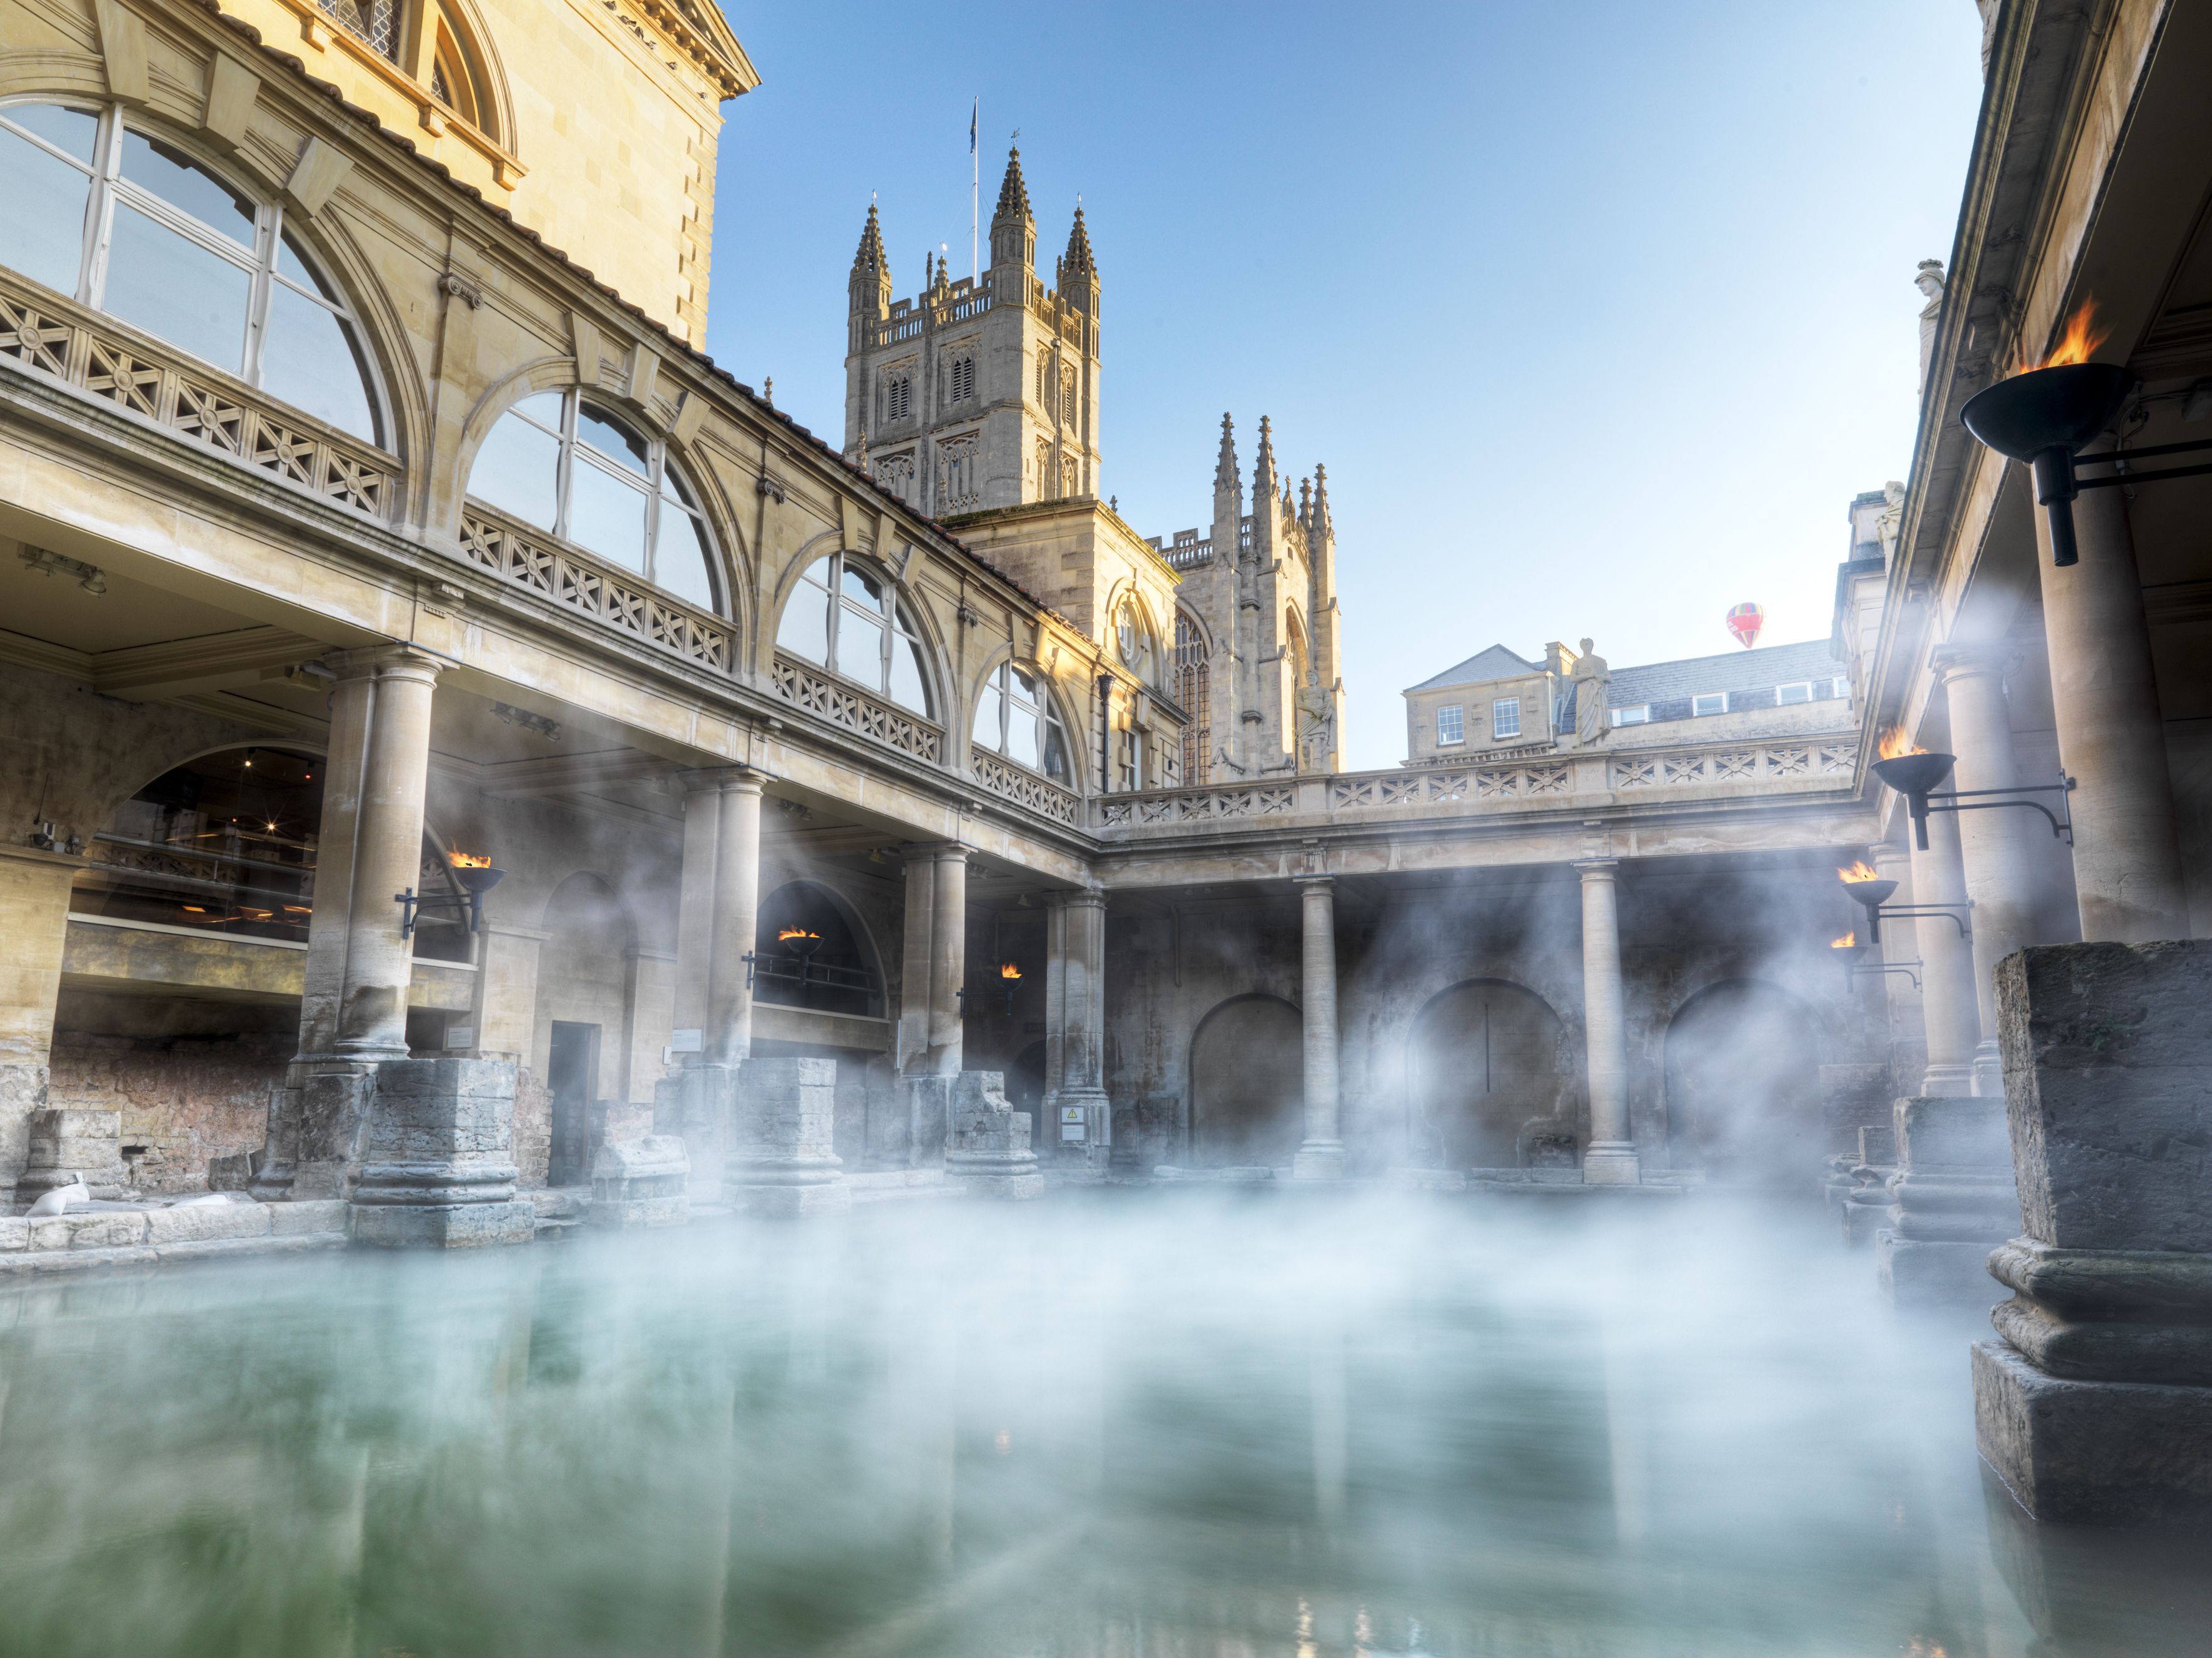 Image: Visit Bath